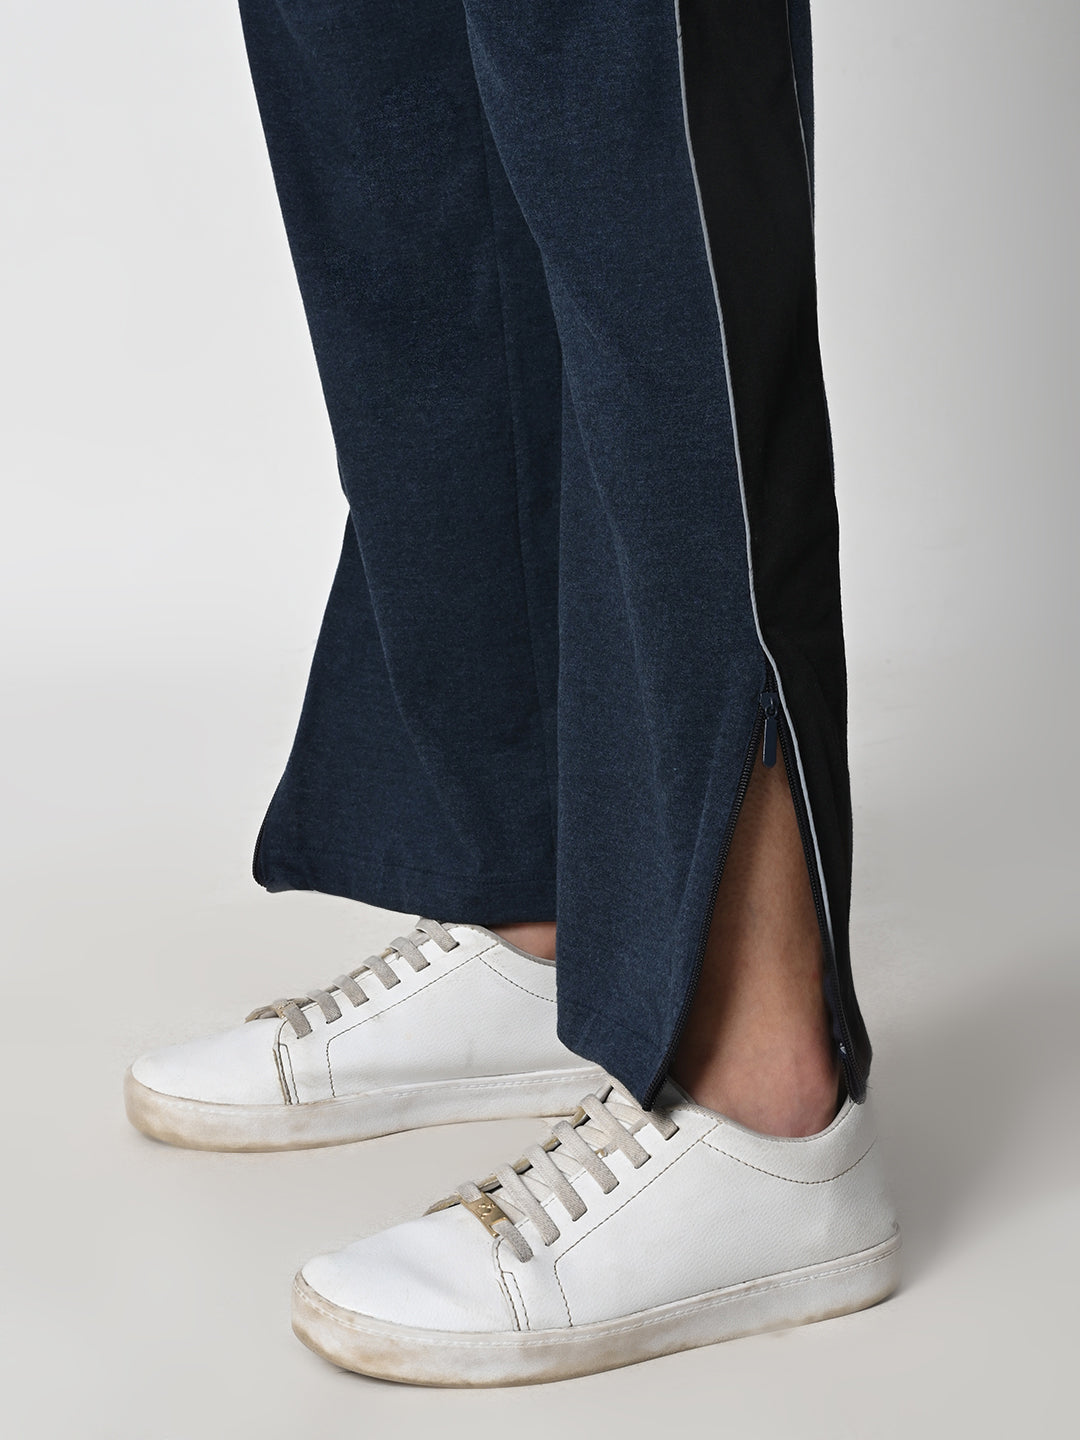 Reflective Side Stripe Cotton Track Pant for Women (Melange Blue)